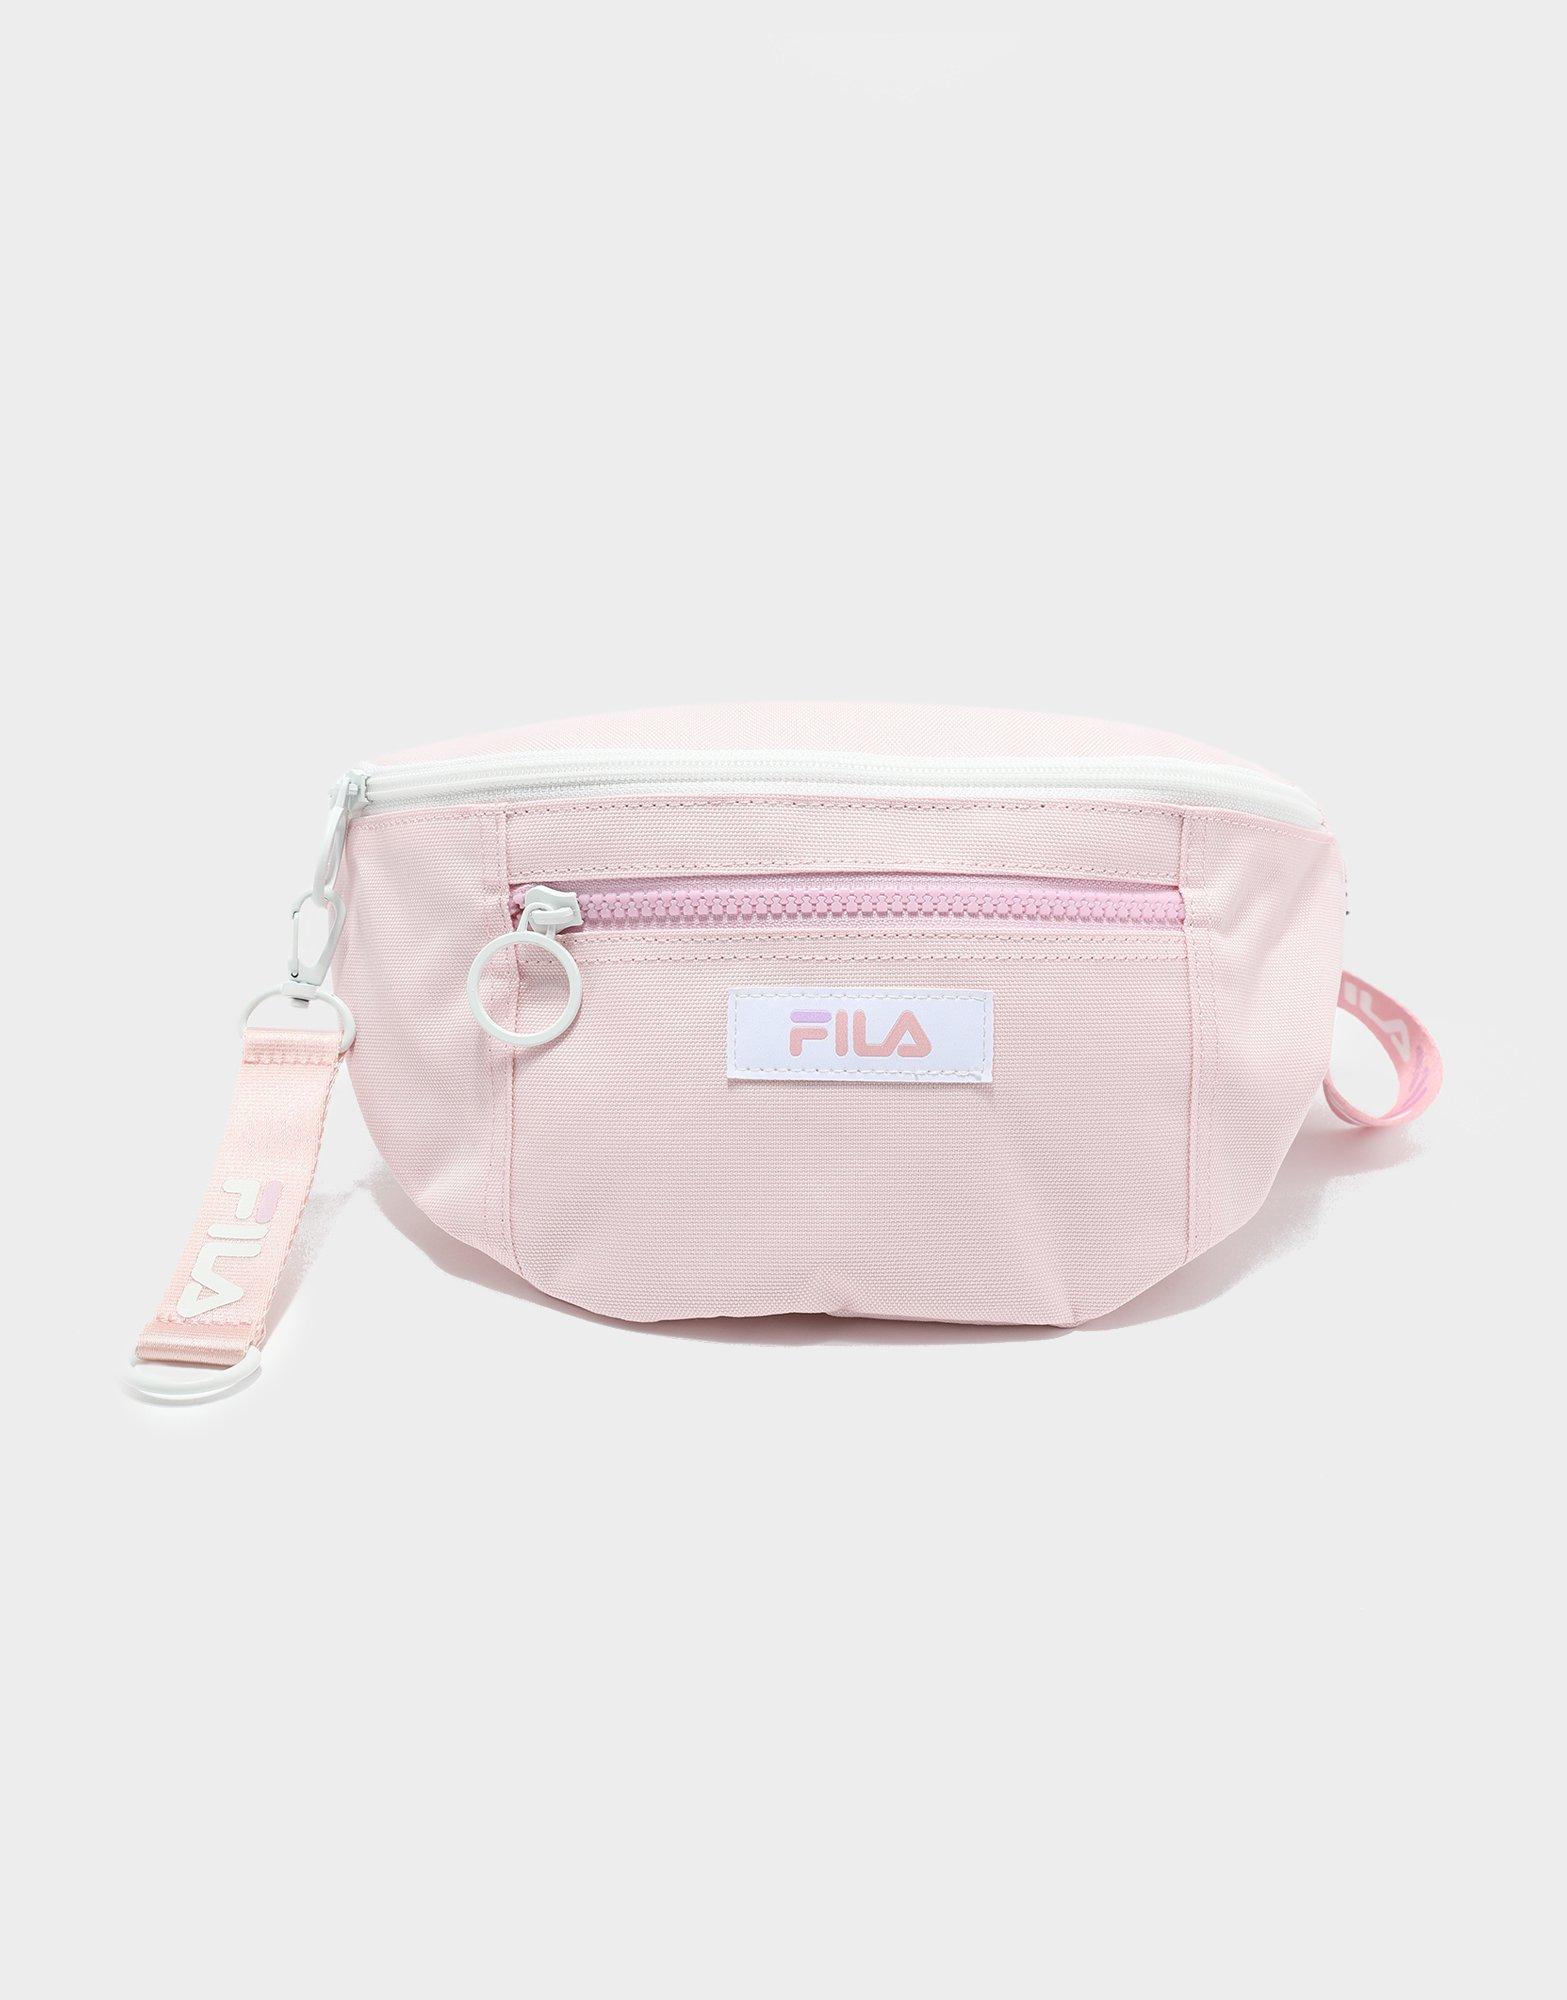 fila bags pink